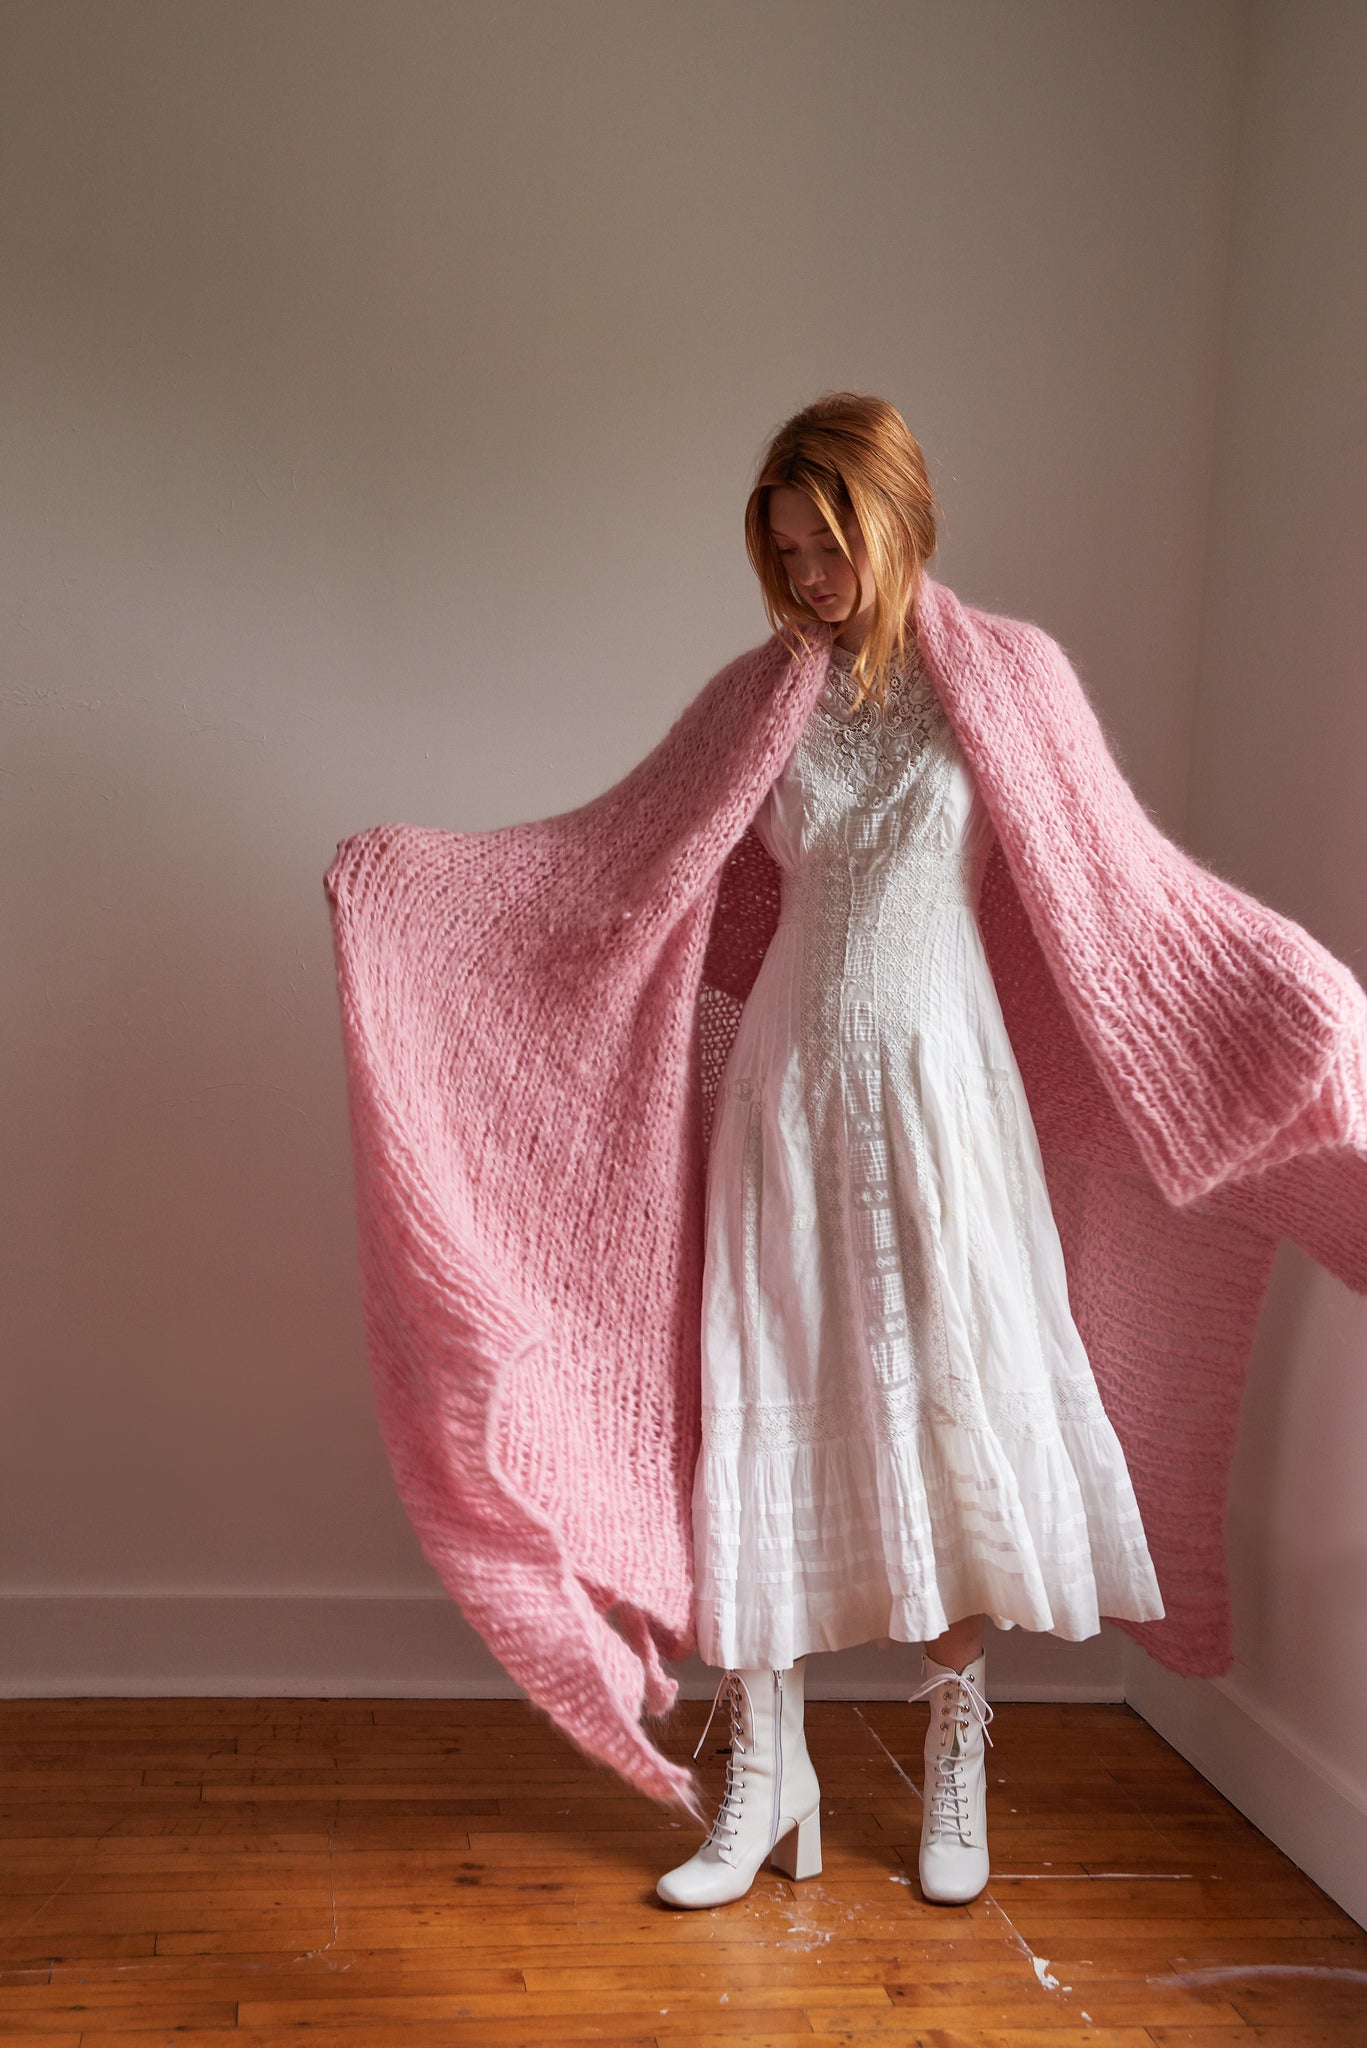 DIY Kit - Blanket - Mohair So Soft